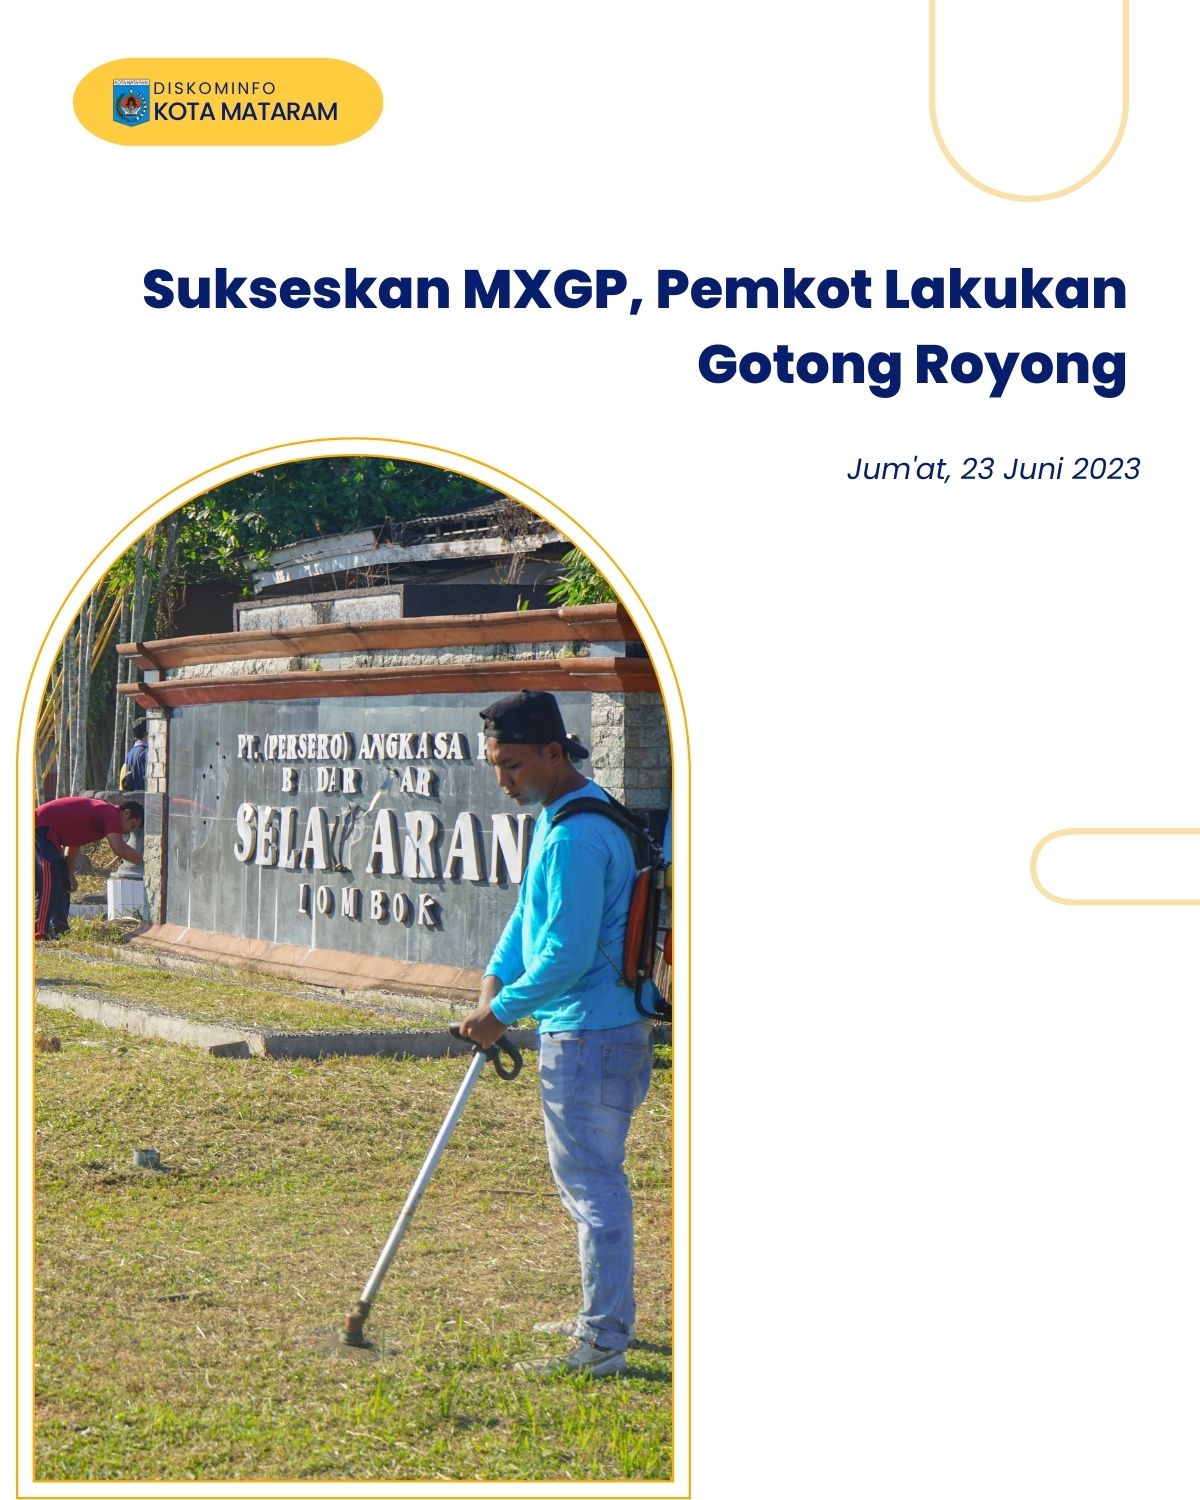 Sukseskan MXGP, Pemkot Lakukan Gotong Royong